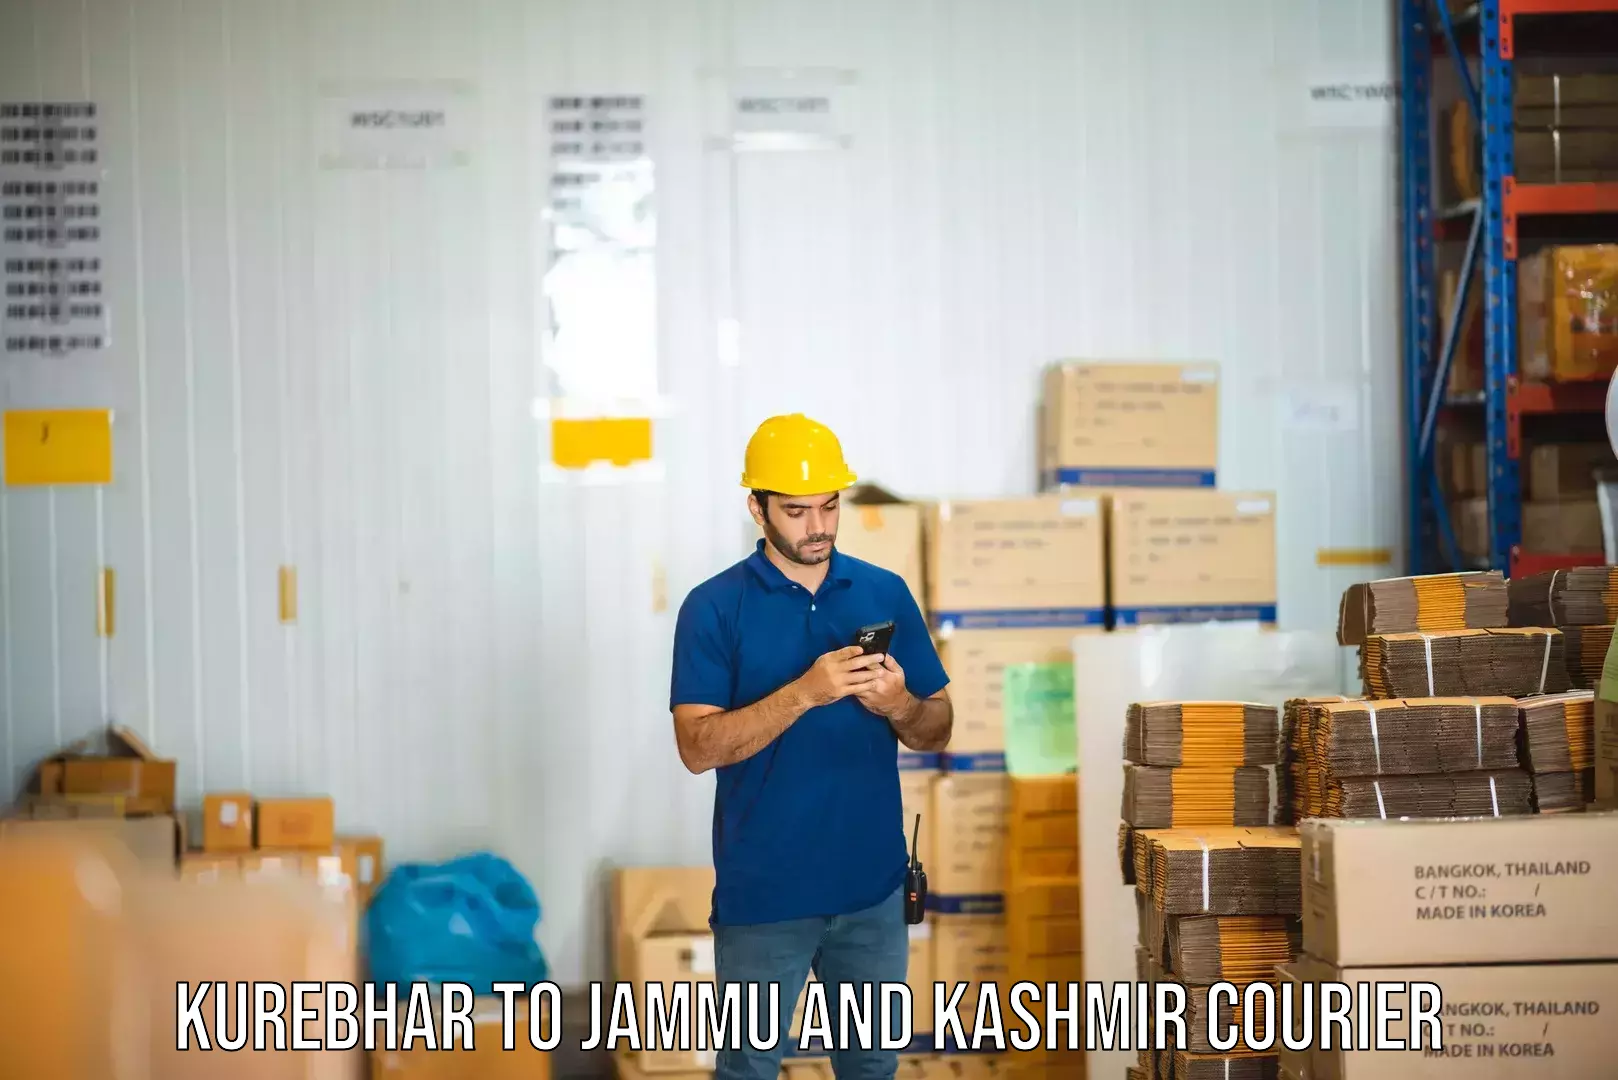 Quality courier partnerships Kurebhar to Pulwama